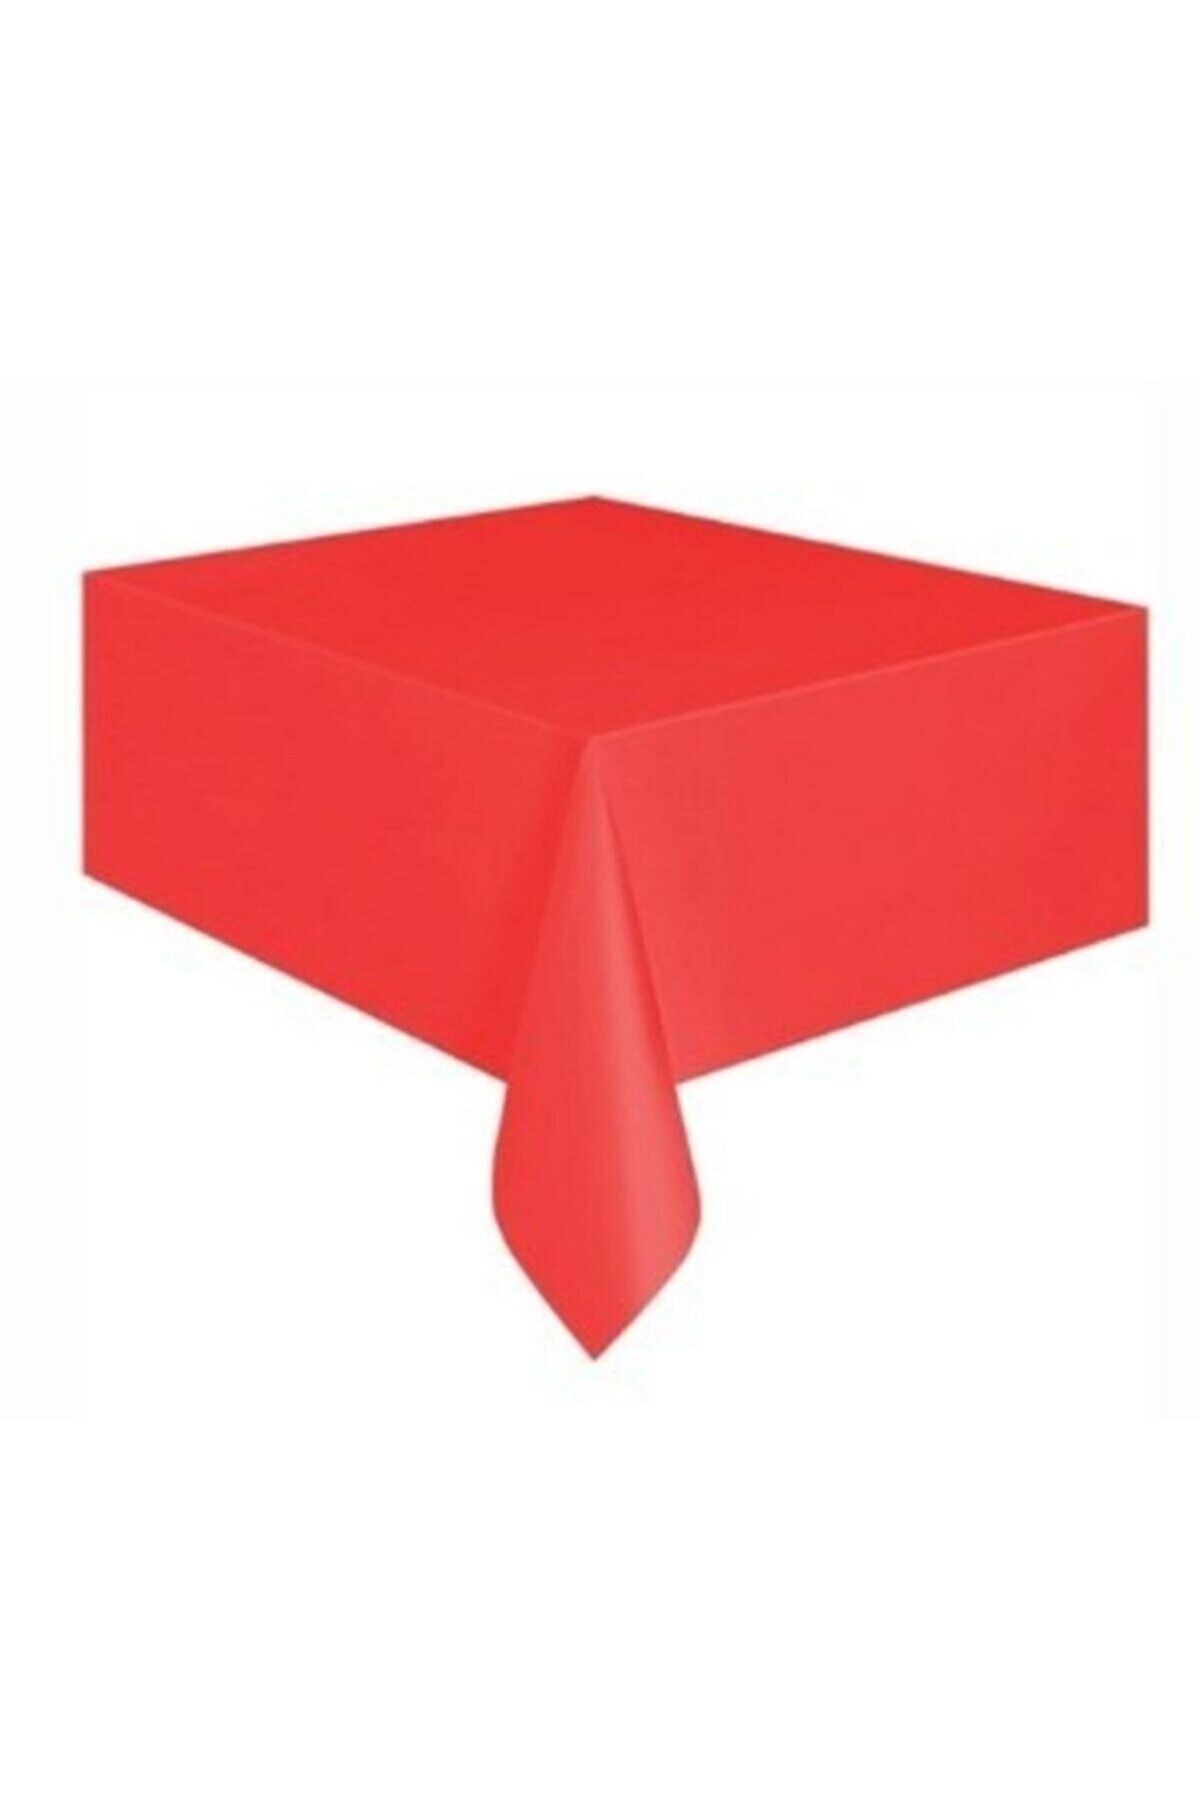 Renkli Parti Masa Örtüsü Kırmızı Renk 120x180cm